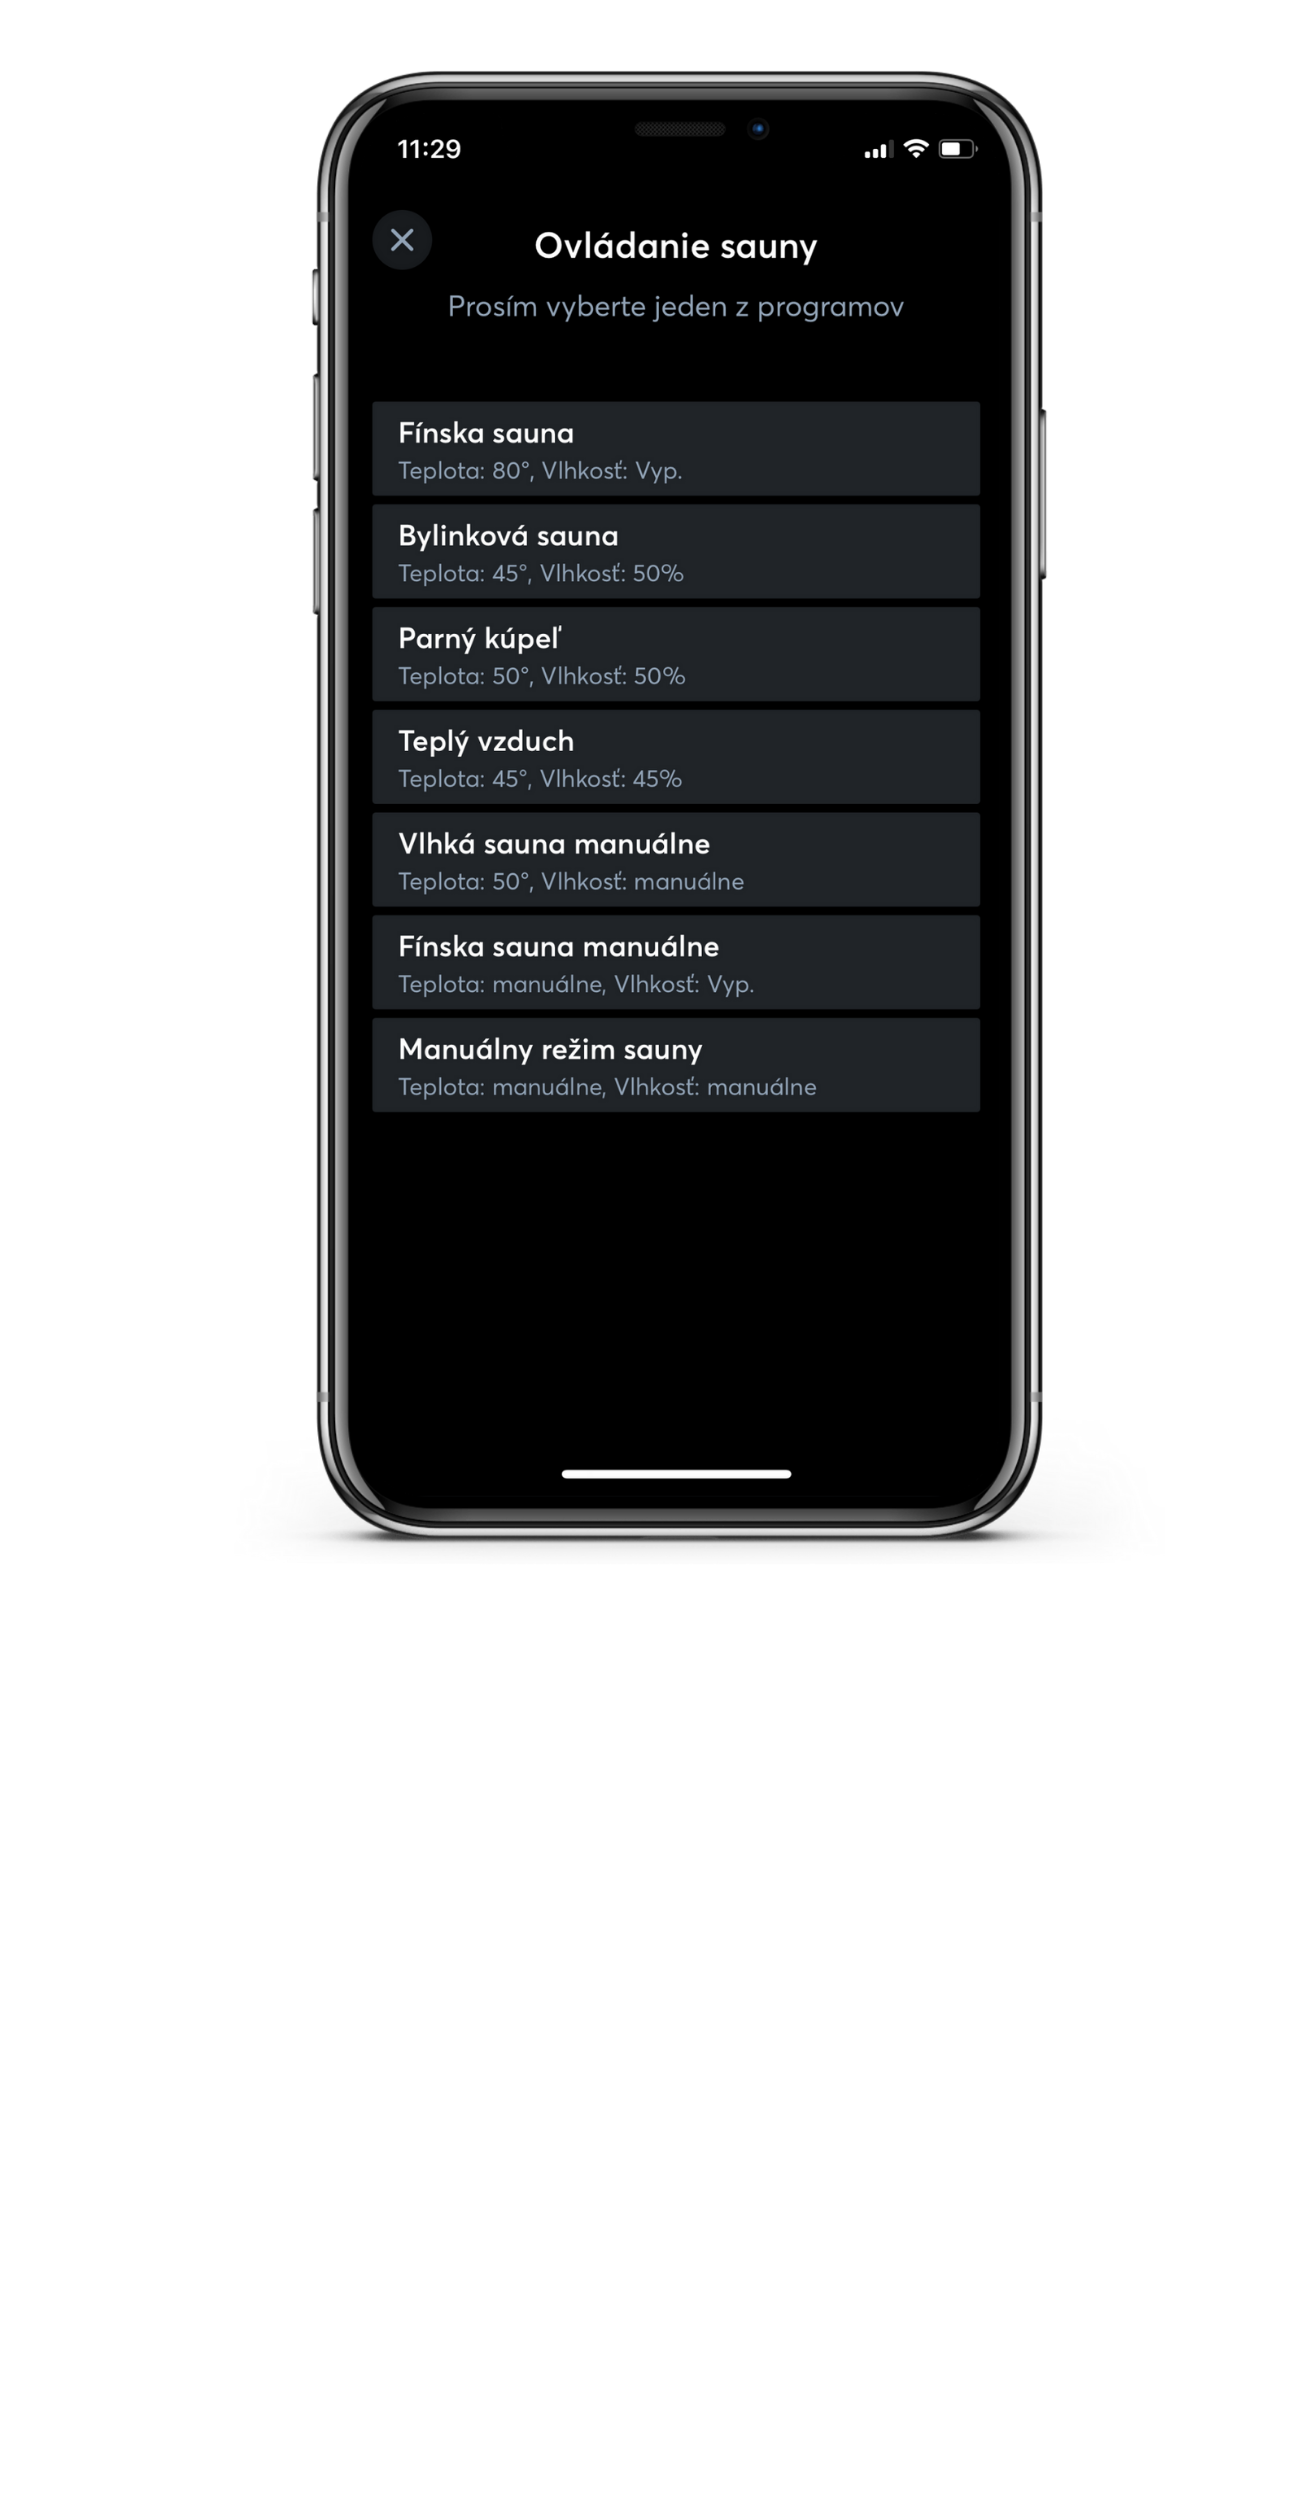 Ovládanie sauny v mobilnej aplikácii Loxone